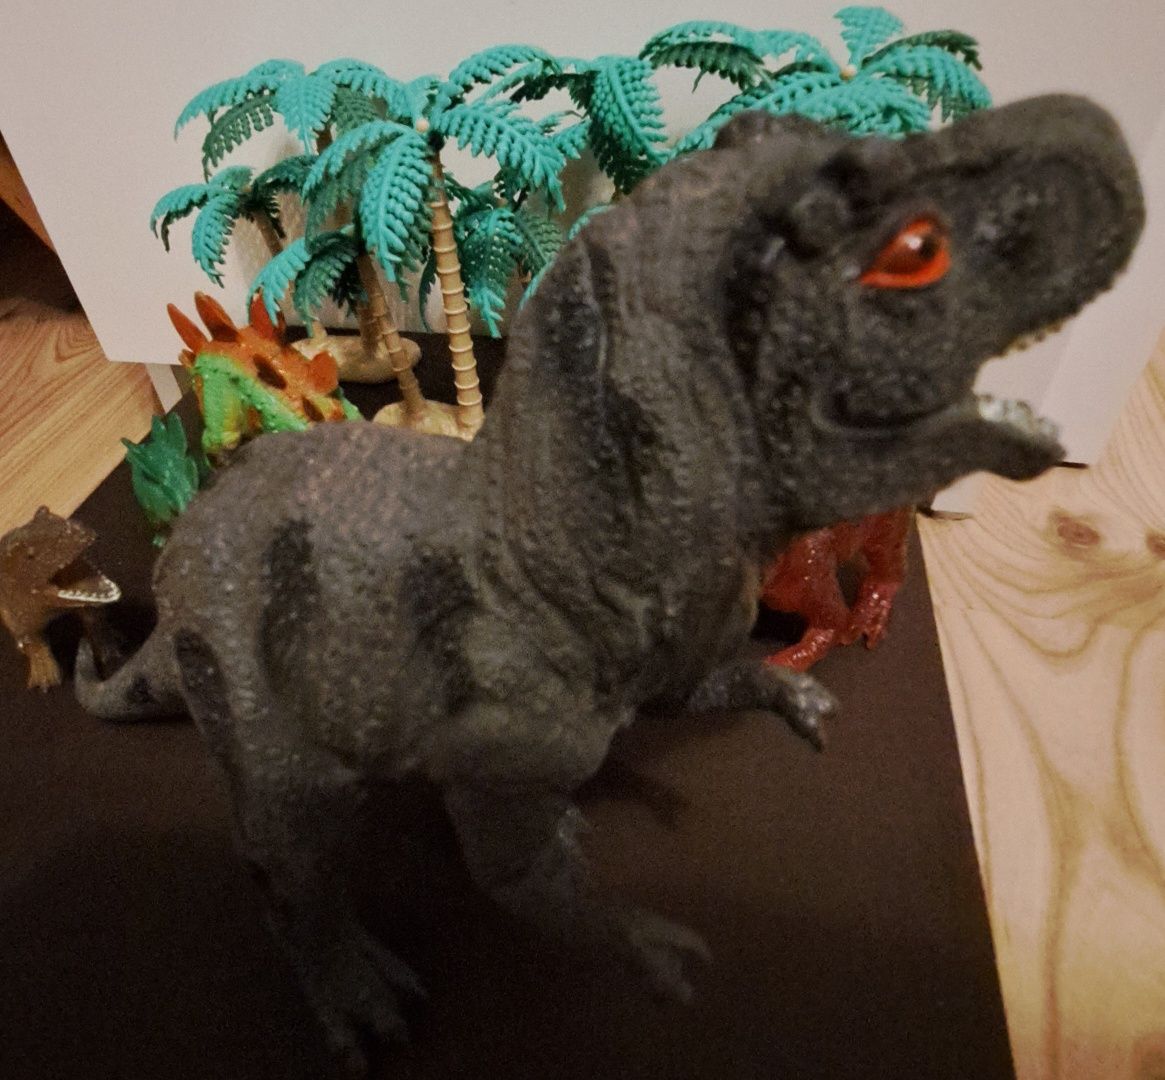 Zestaw dinozaurów